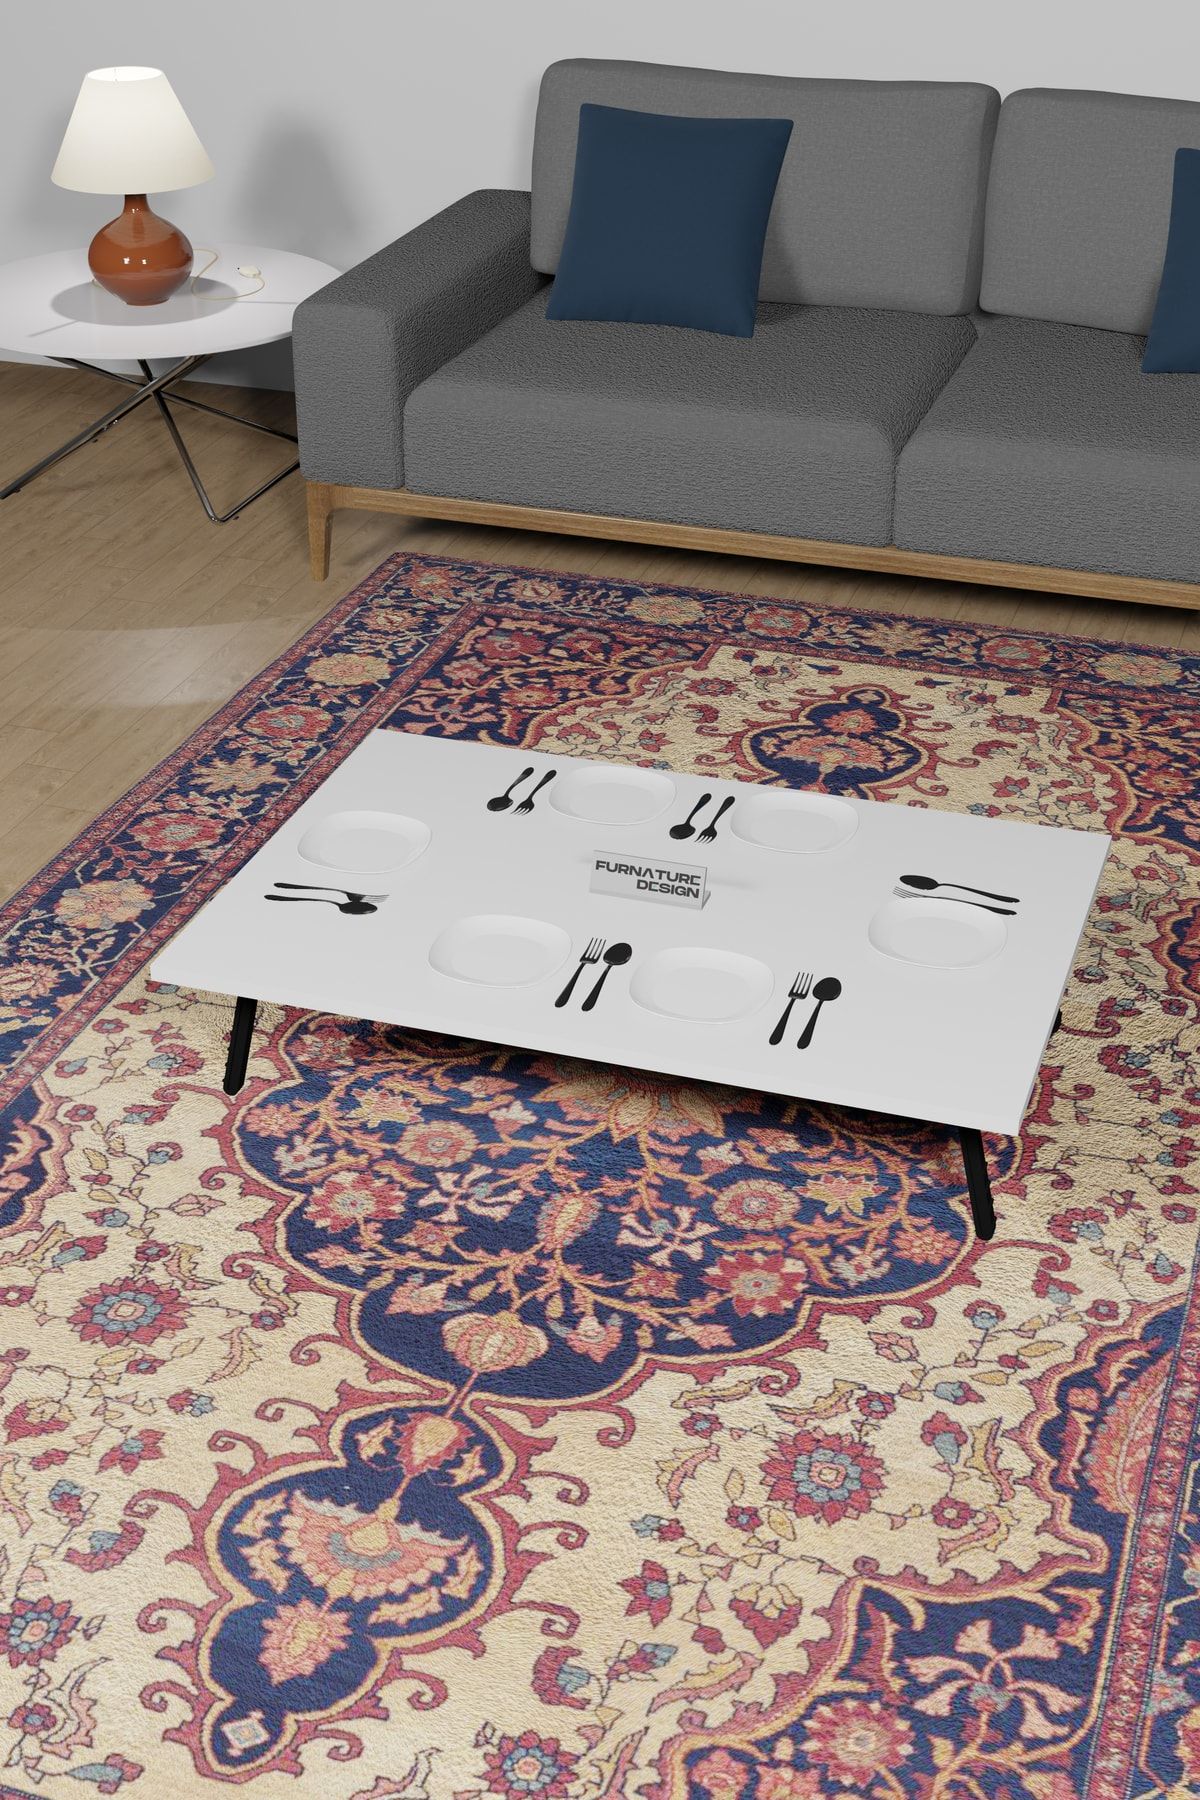 FurnatureDesign 60x90 Cm Yer Sofrası Katlanır Ayaklı Portatif Yemek Hamur Açma Masası Beyaz